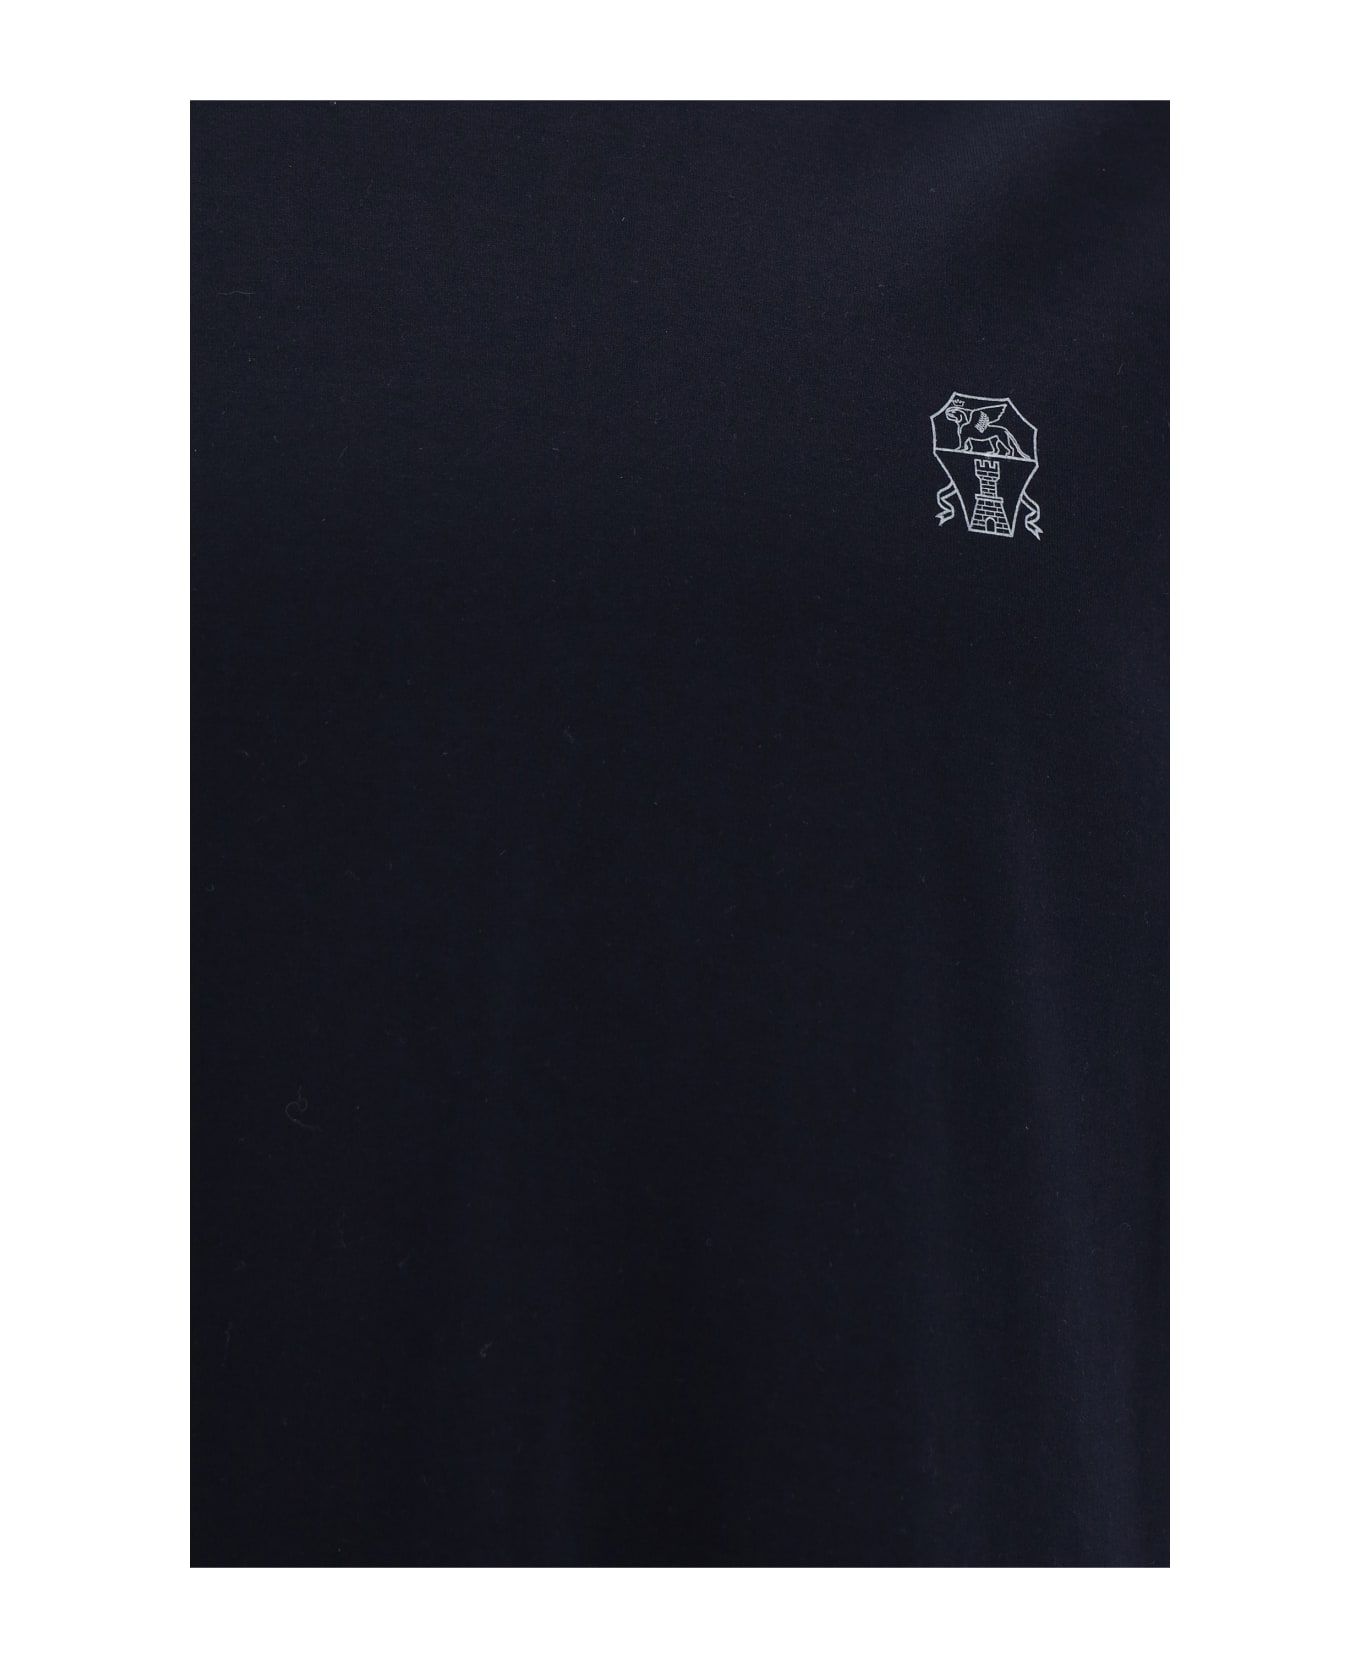 Brunello Cucinelli T-shirt - Navy